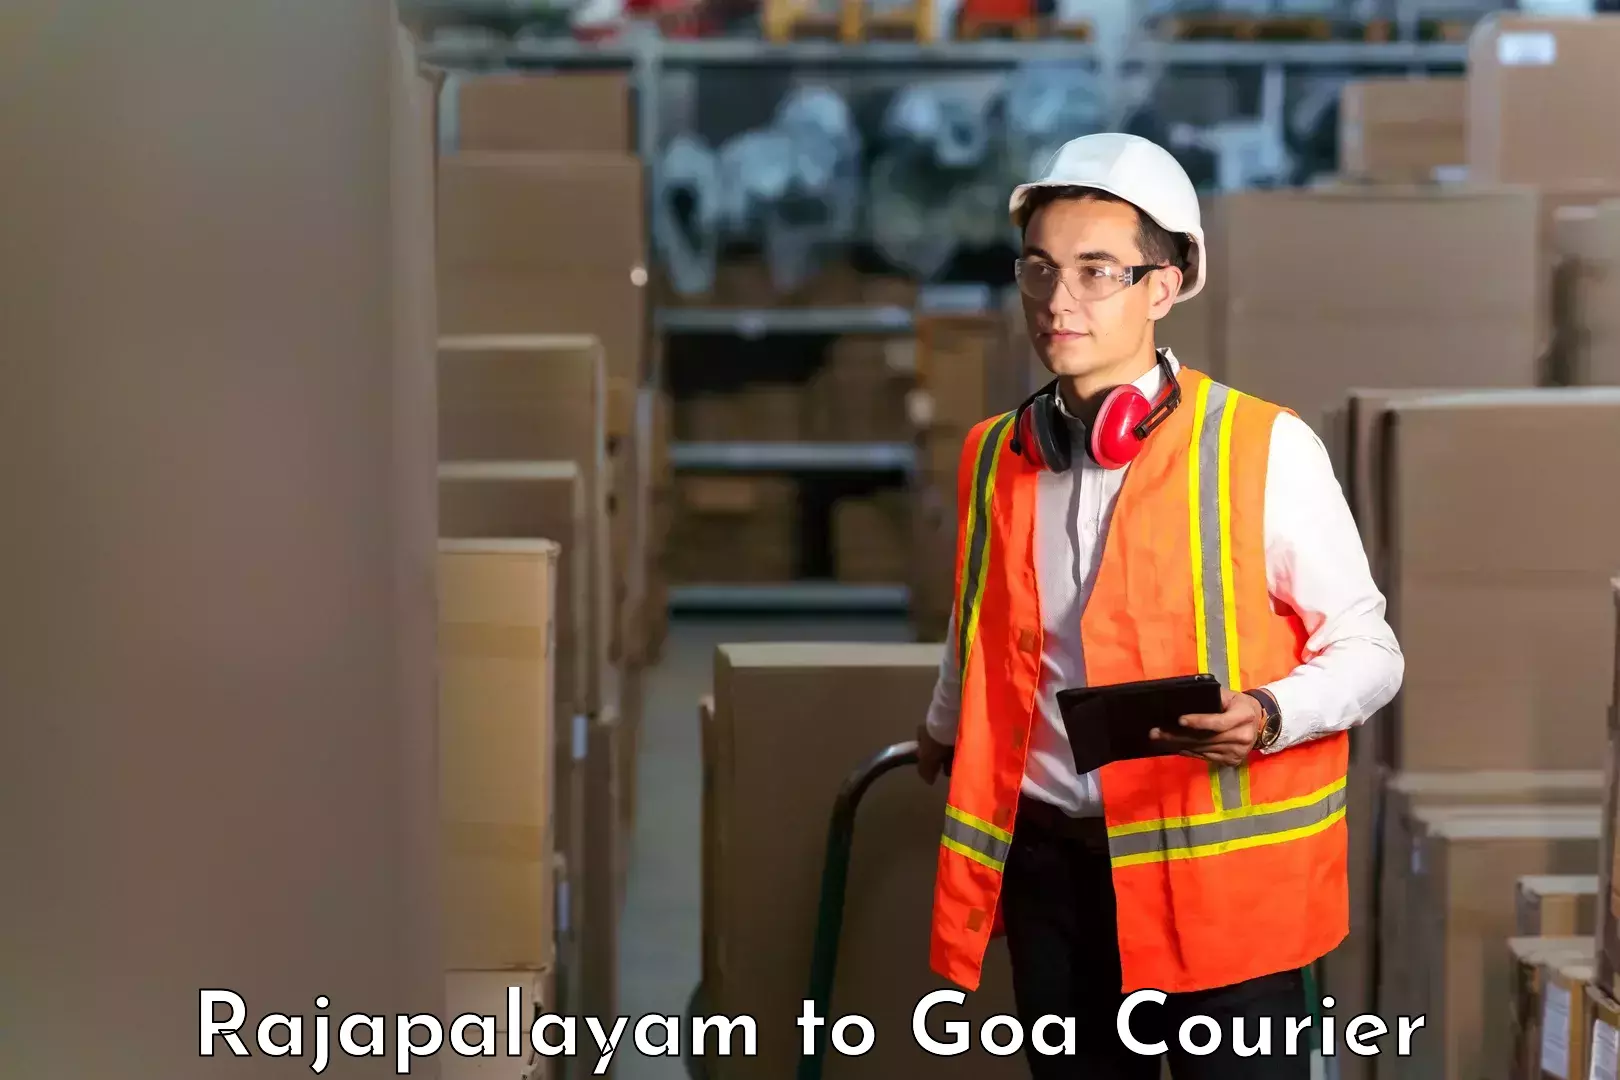 Courier app Rajapalayam to Panjim